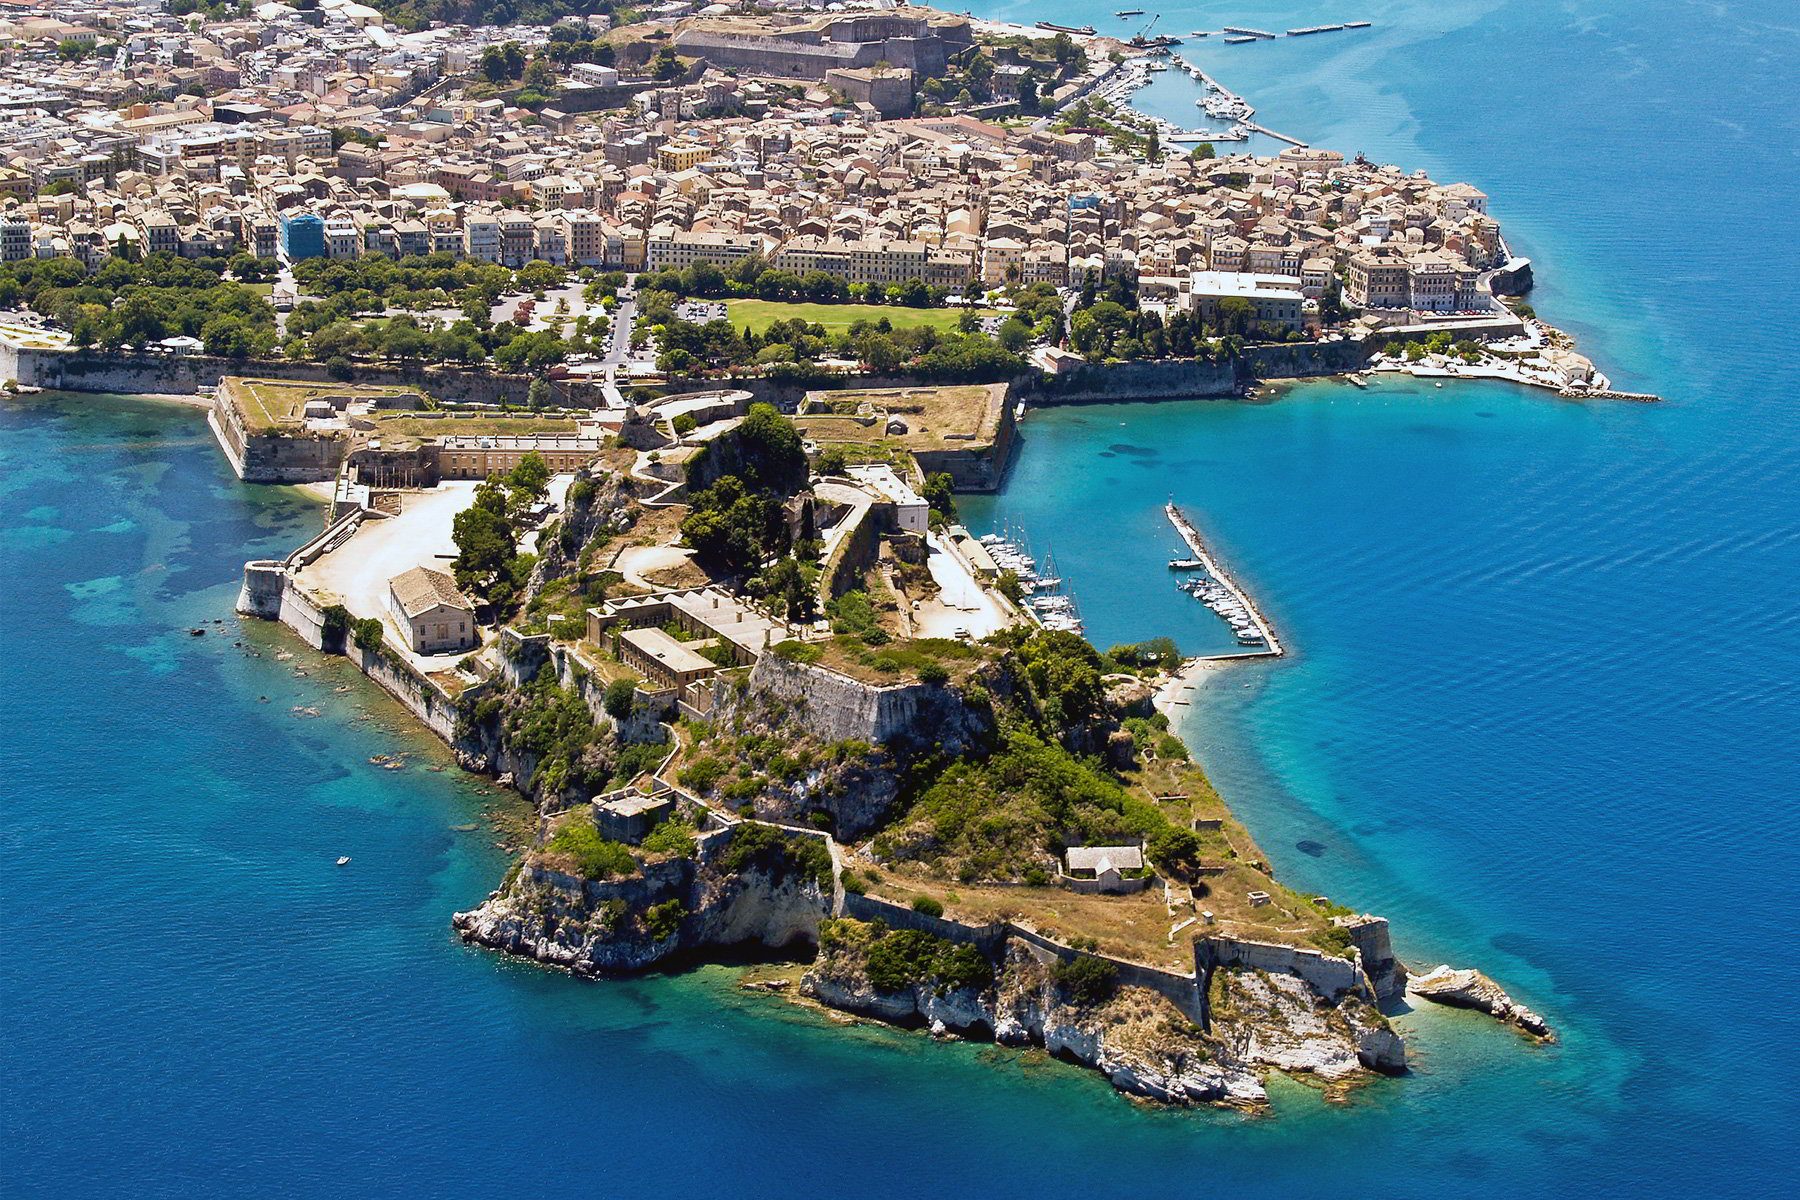 10 μέρη που πρέπει να επισκεφτείς στην Ελλάδα φέτος το καλοκαίρι σύμφωνα με το Forbes - Φωτογραφία 10